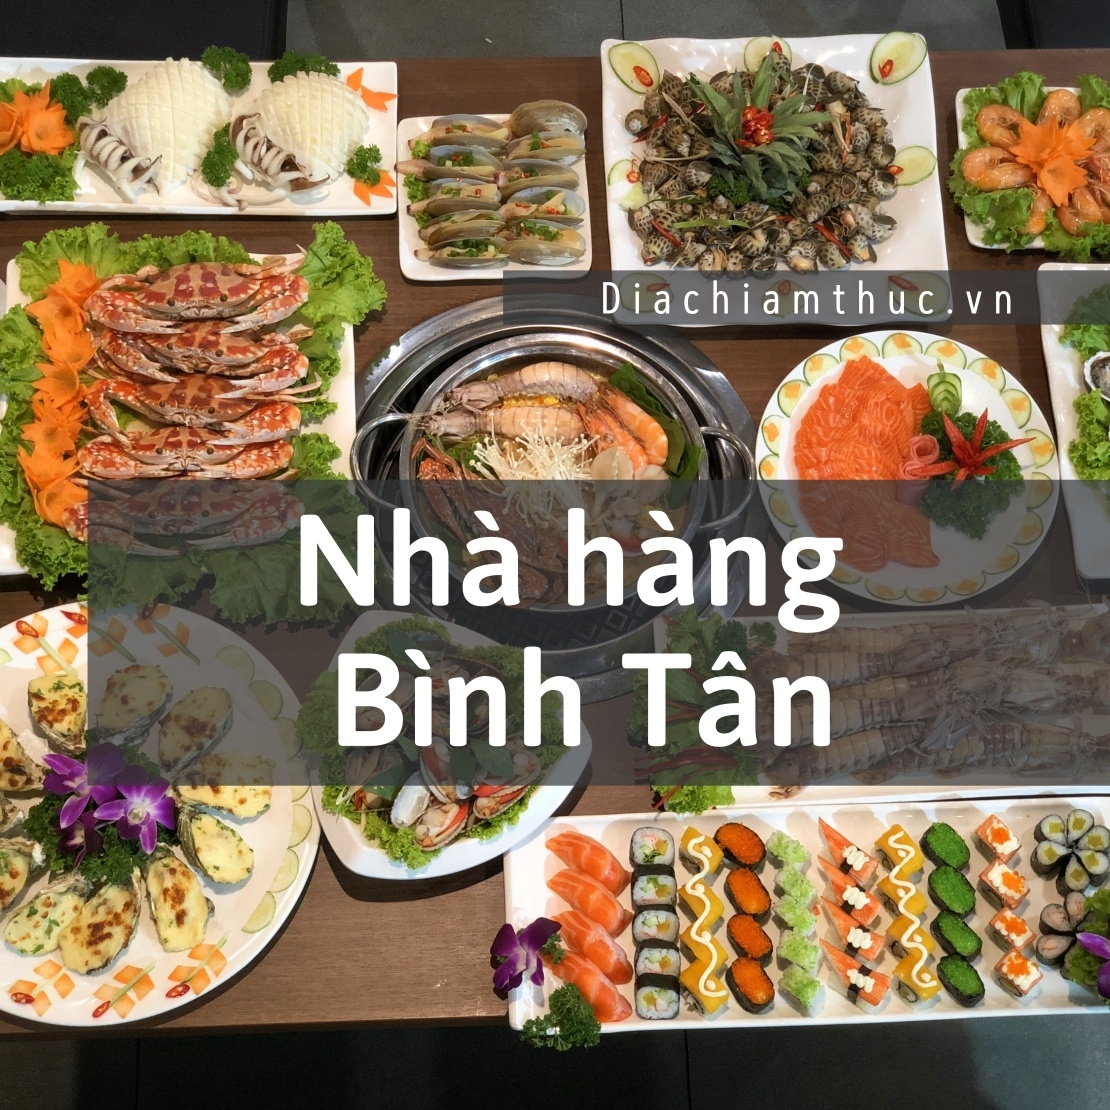 Nhà hàng quận Bình Tân